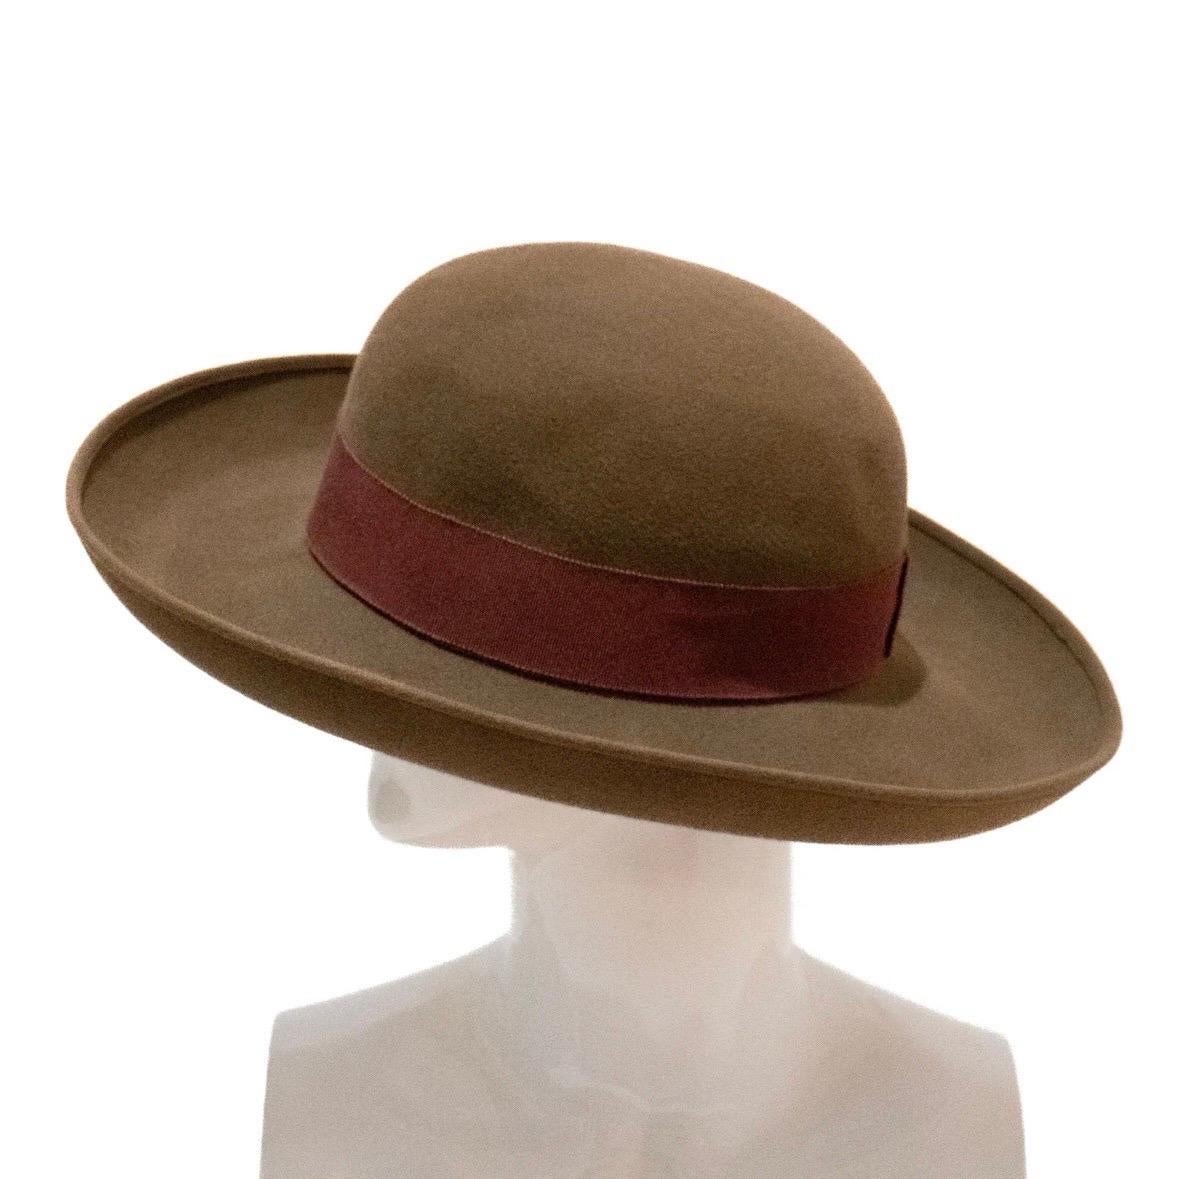 Women's Chanel Broad-Brimmed Felt Hat